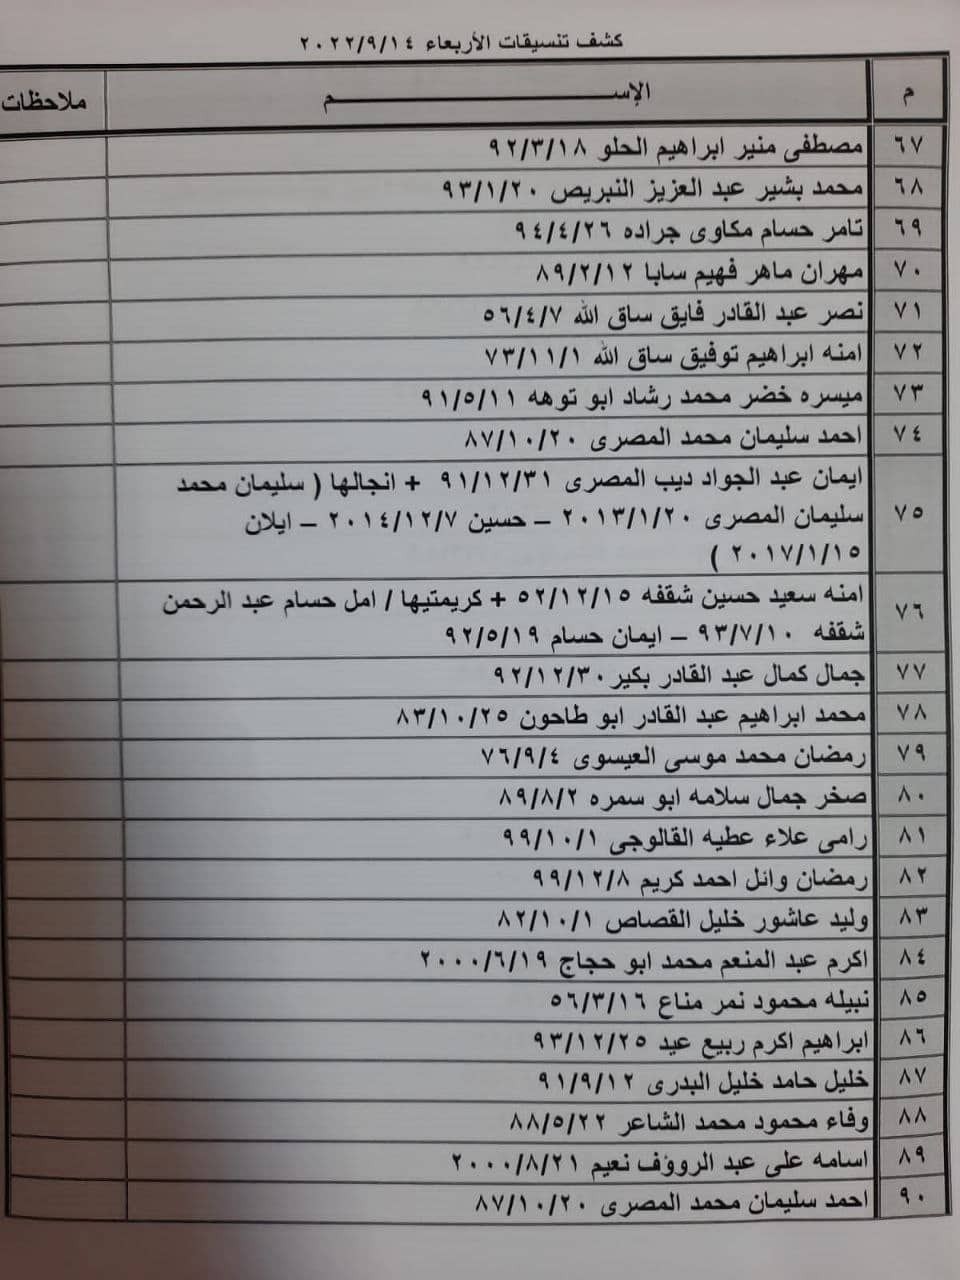 بالأسماء: كشف "تنسيقات مصرية" للسفر عبر معبر رفح يوم الأربعاء 14 سبتمبر